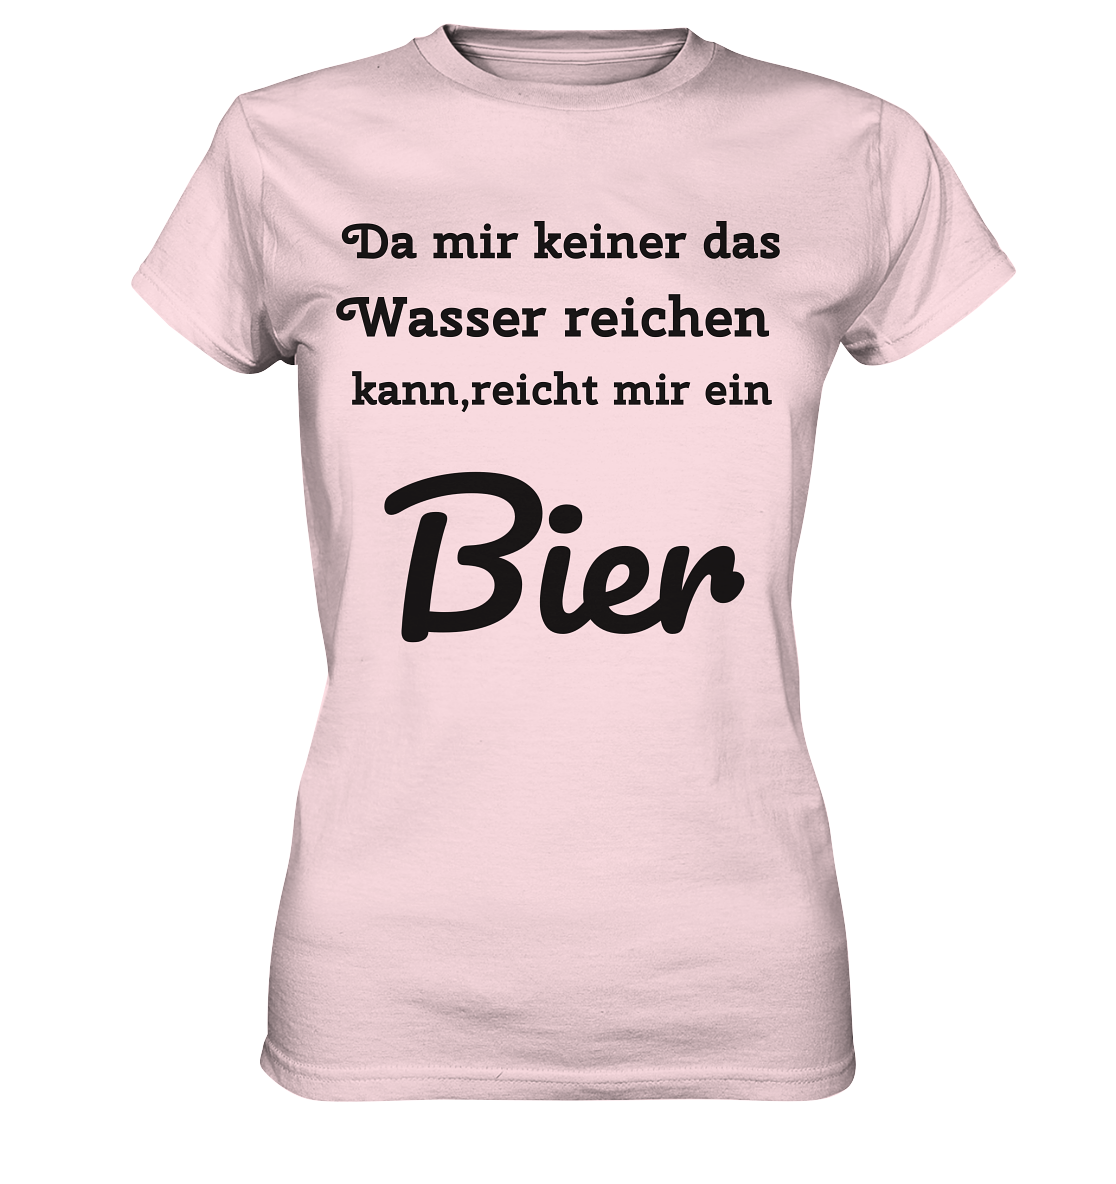 Da mir keiner das Wasser reichen kann, reicht mir ein Bier -Fun -Design Munich Palms - Ladies Premium Shirt